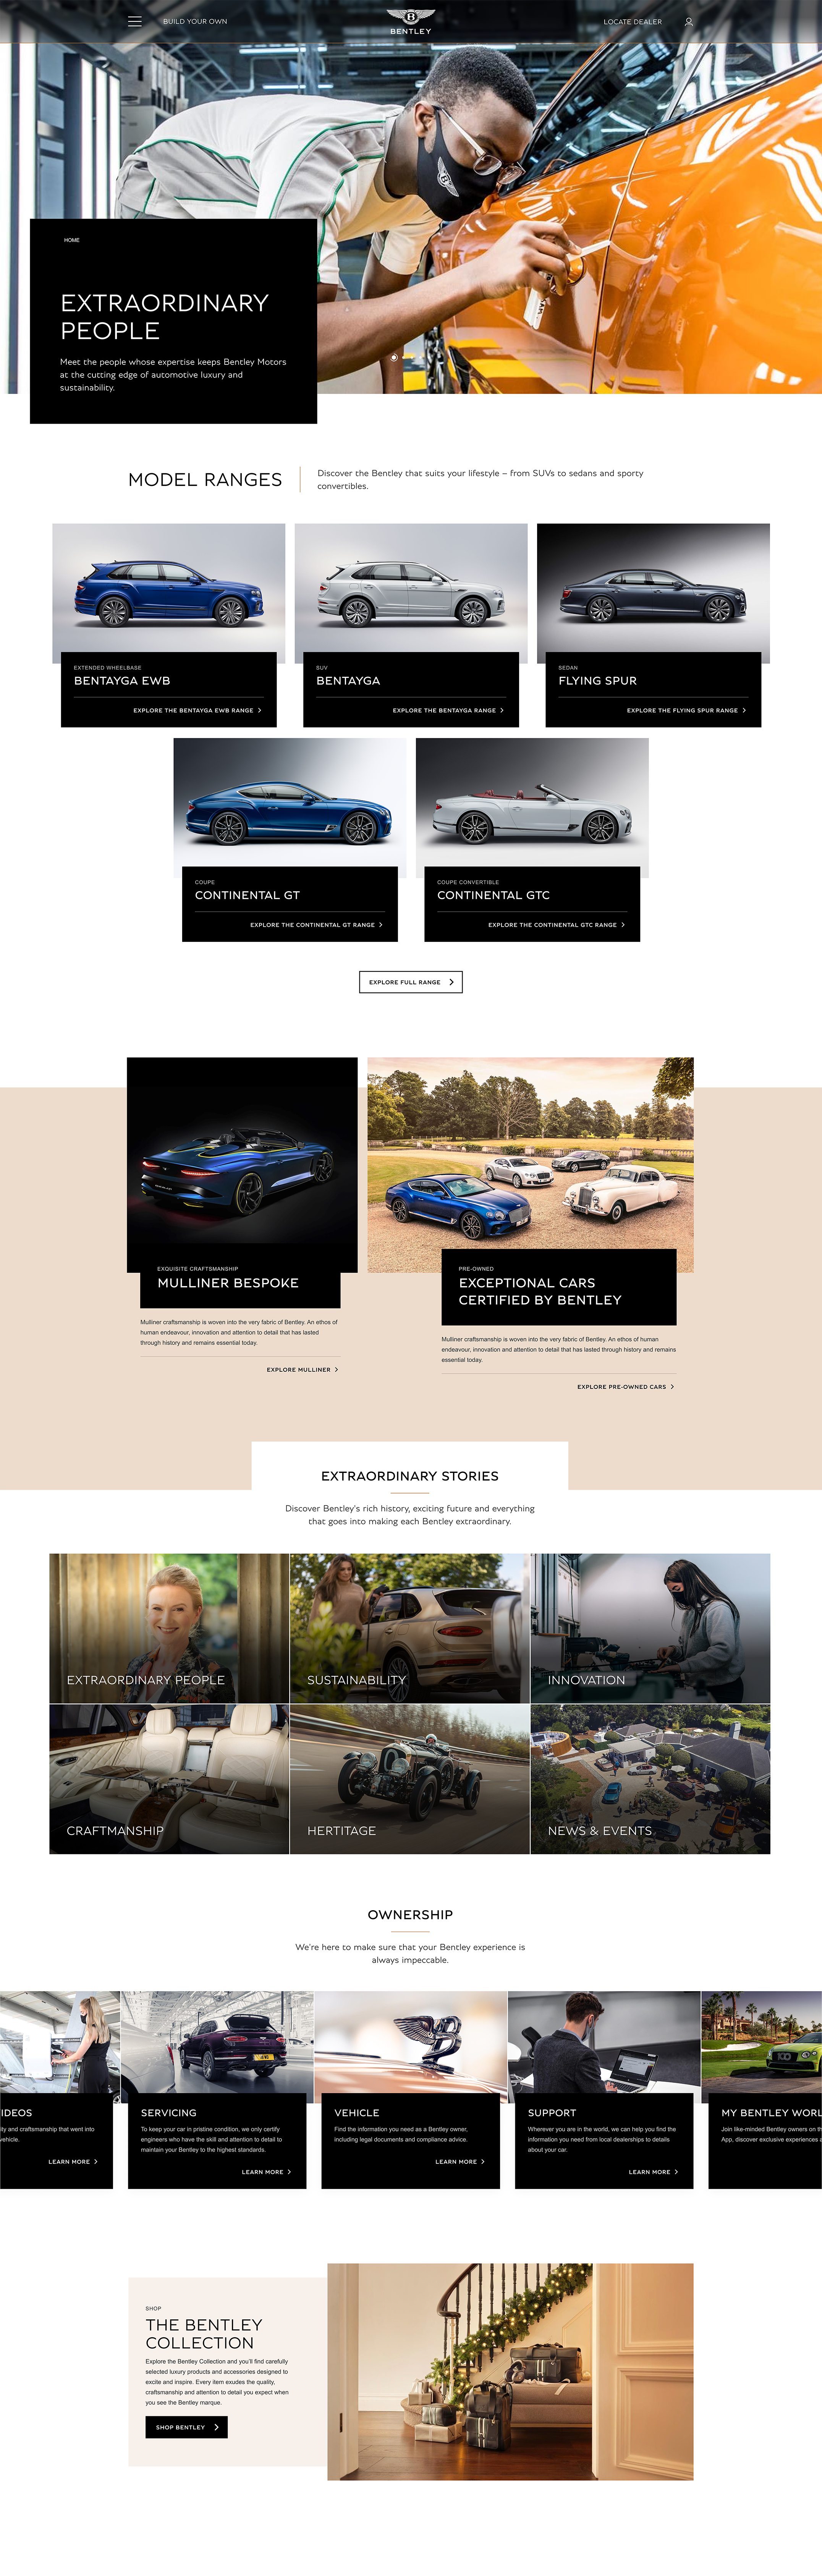 Bentley Motors website large-screen UI